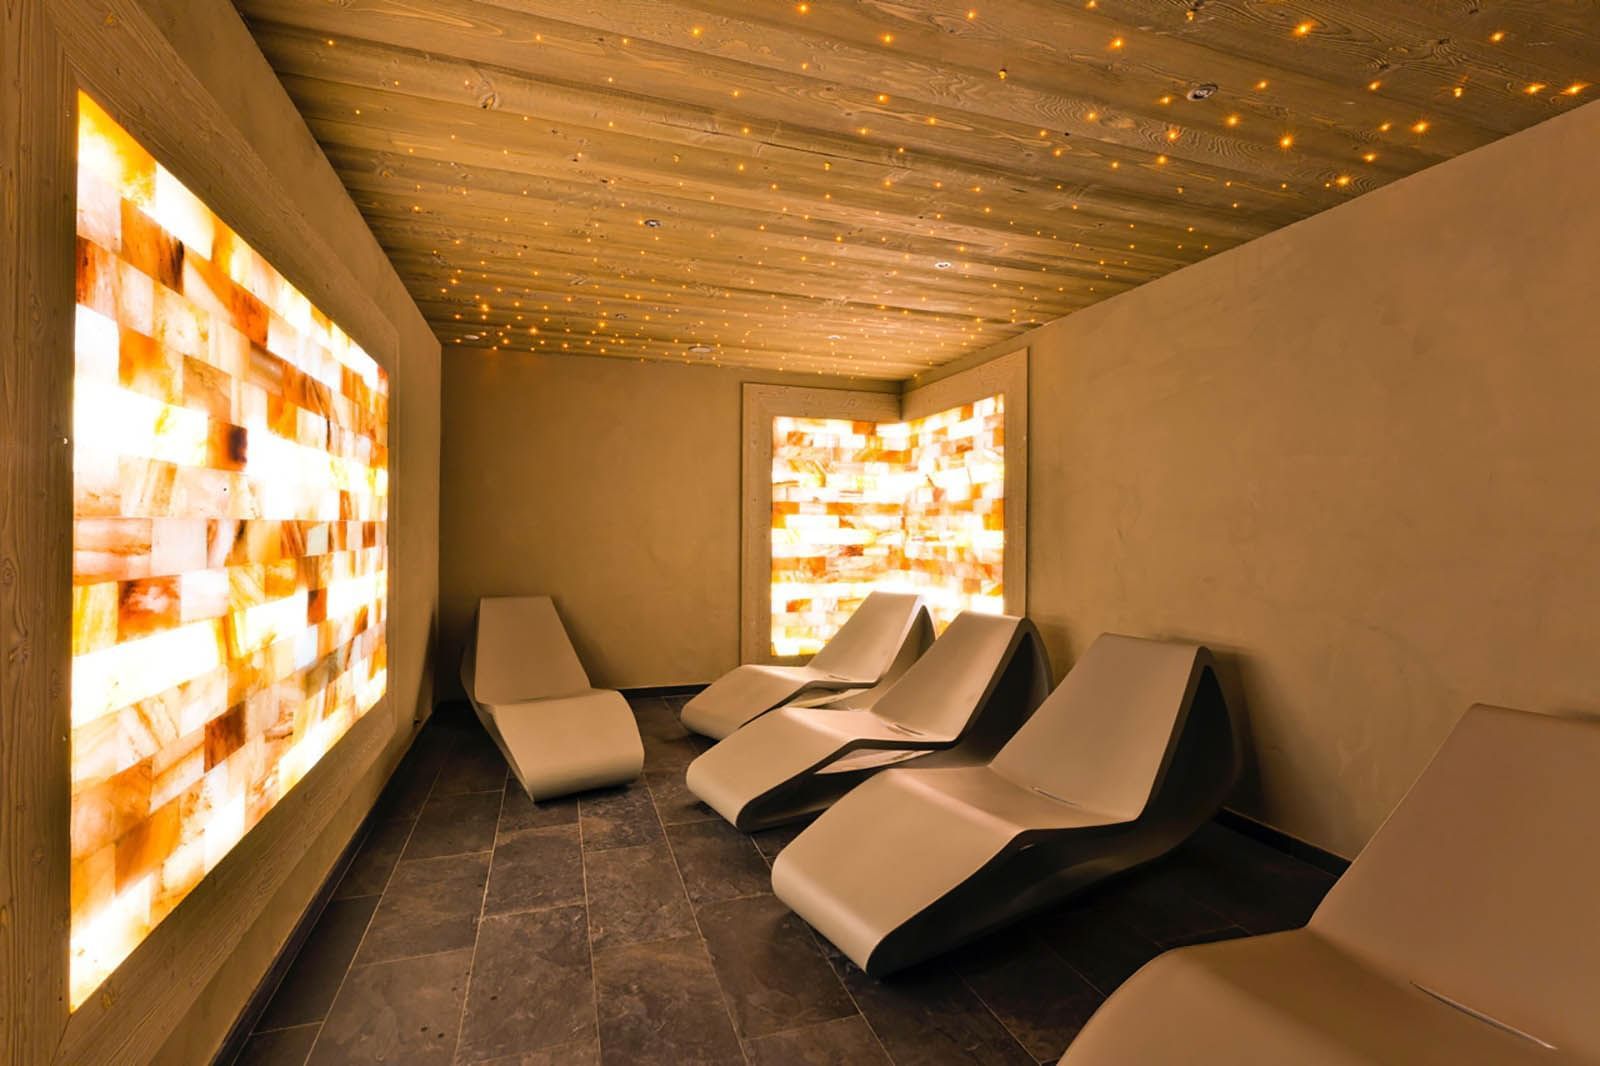 Salle de relaxation mur de sel spa hotel les gentianettes 1600 px